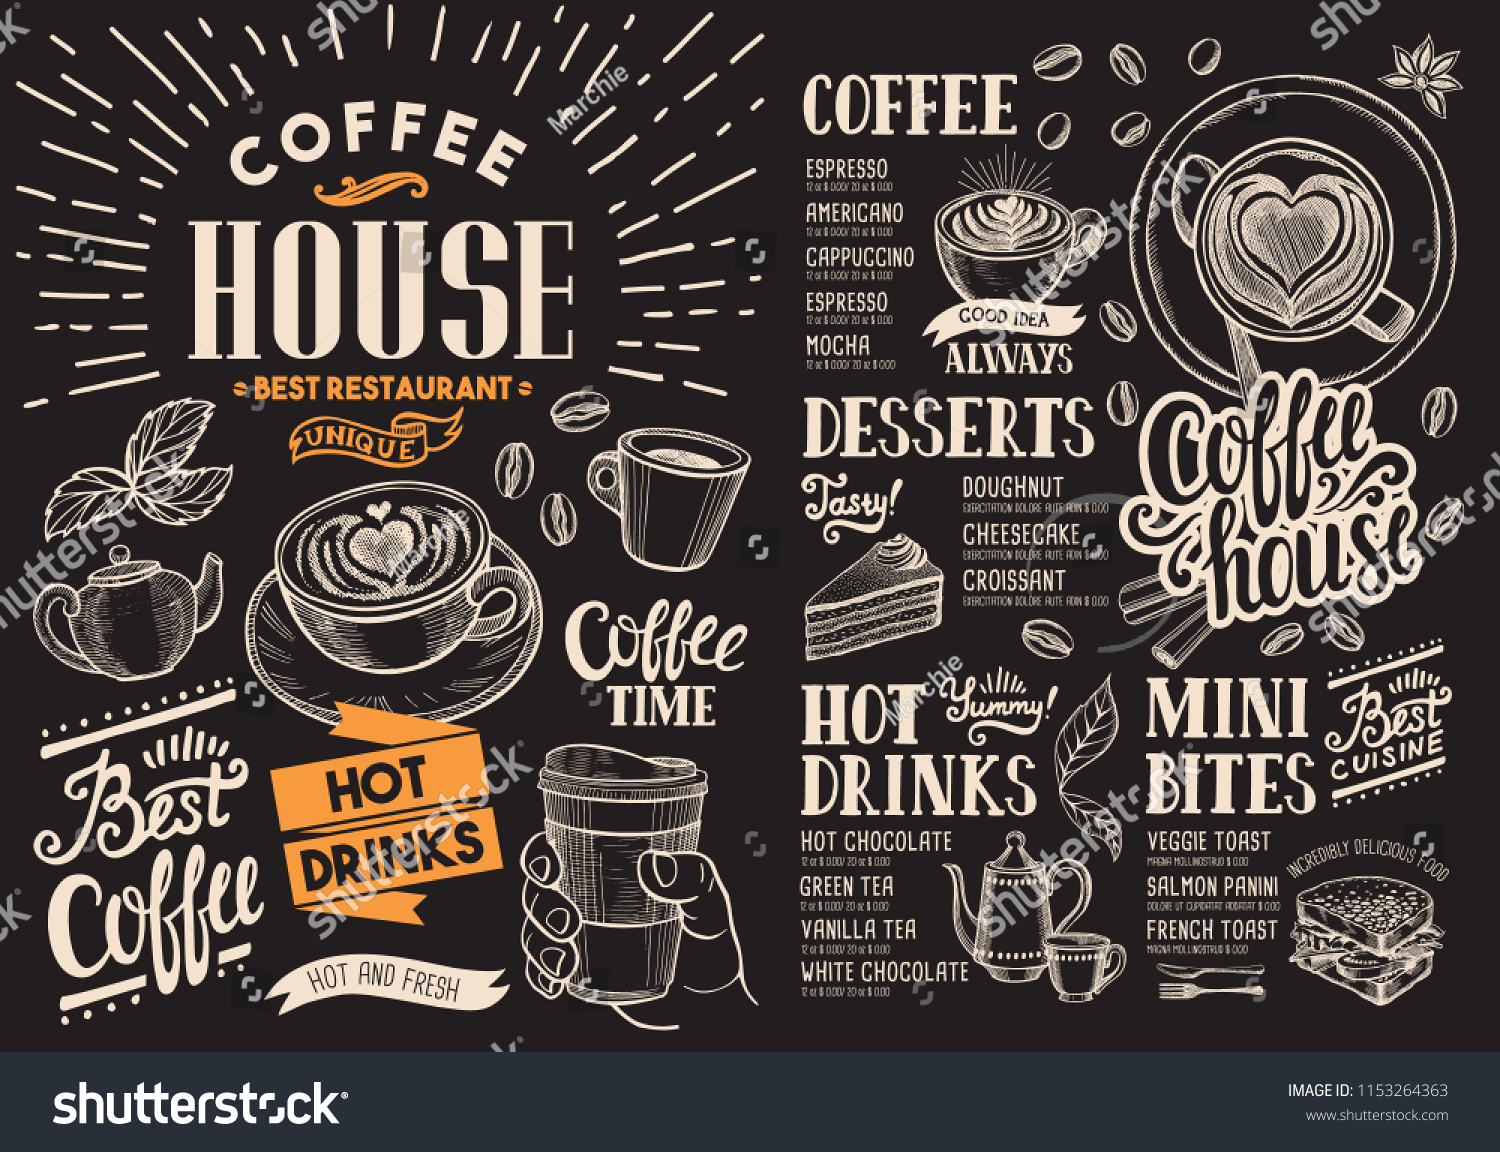 黒板の上にコーヒーレストランのメニュー バーやカフェ用のベクタードリンクフライヤー ビンテージ手描きの食べ物イラストを使ったデザインテンプレート のベクター画像素材 ロイヤリティフリー